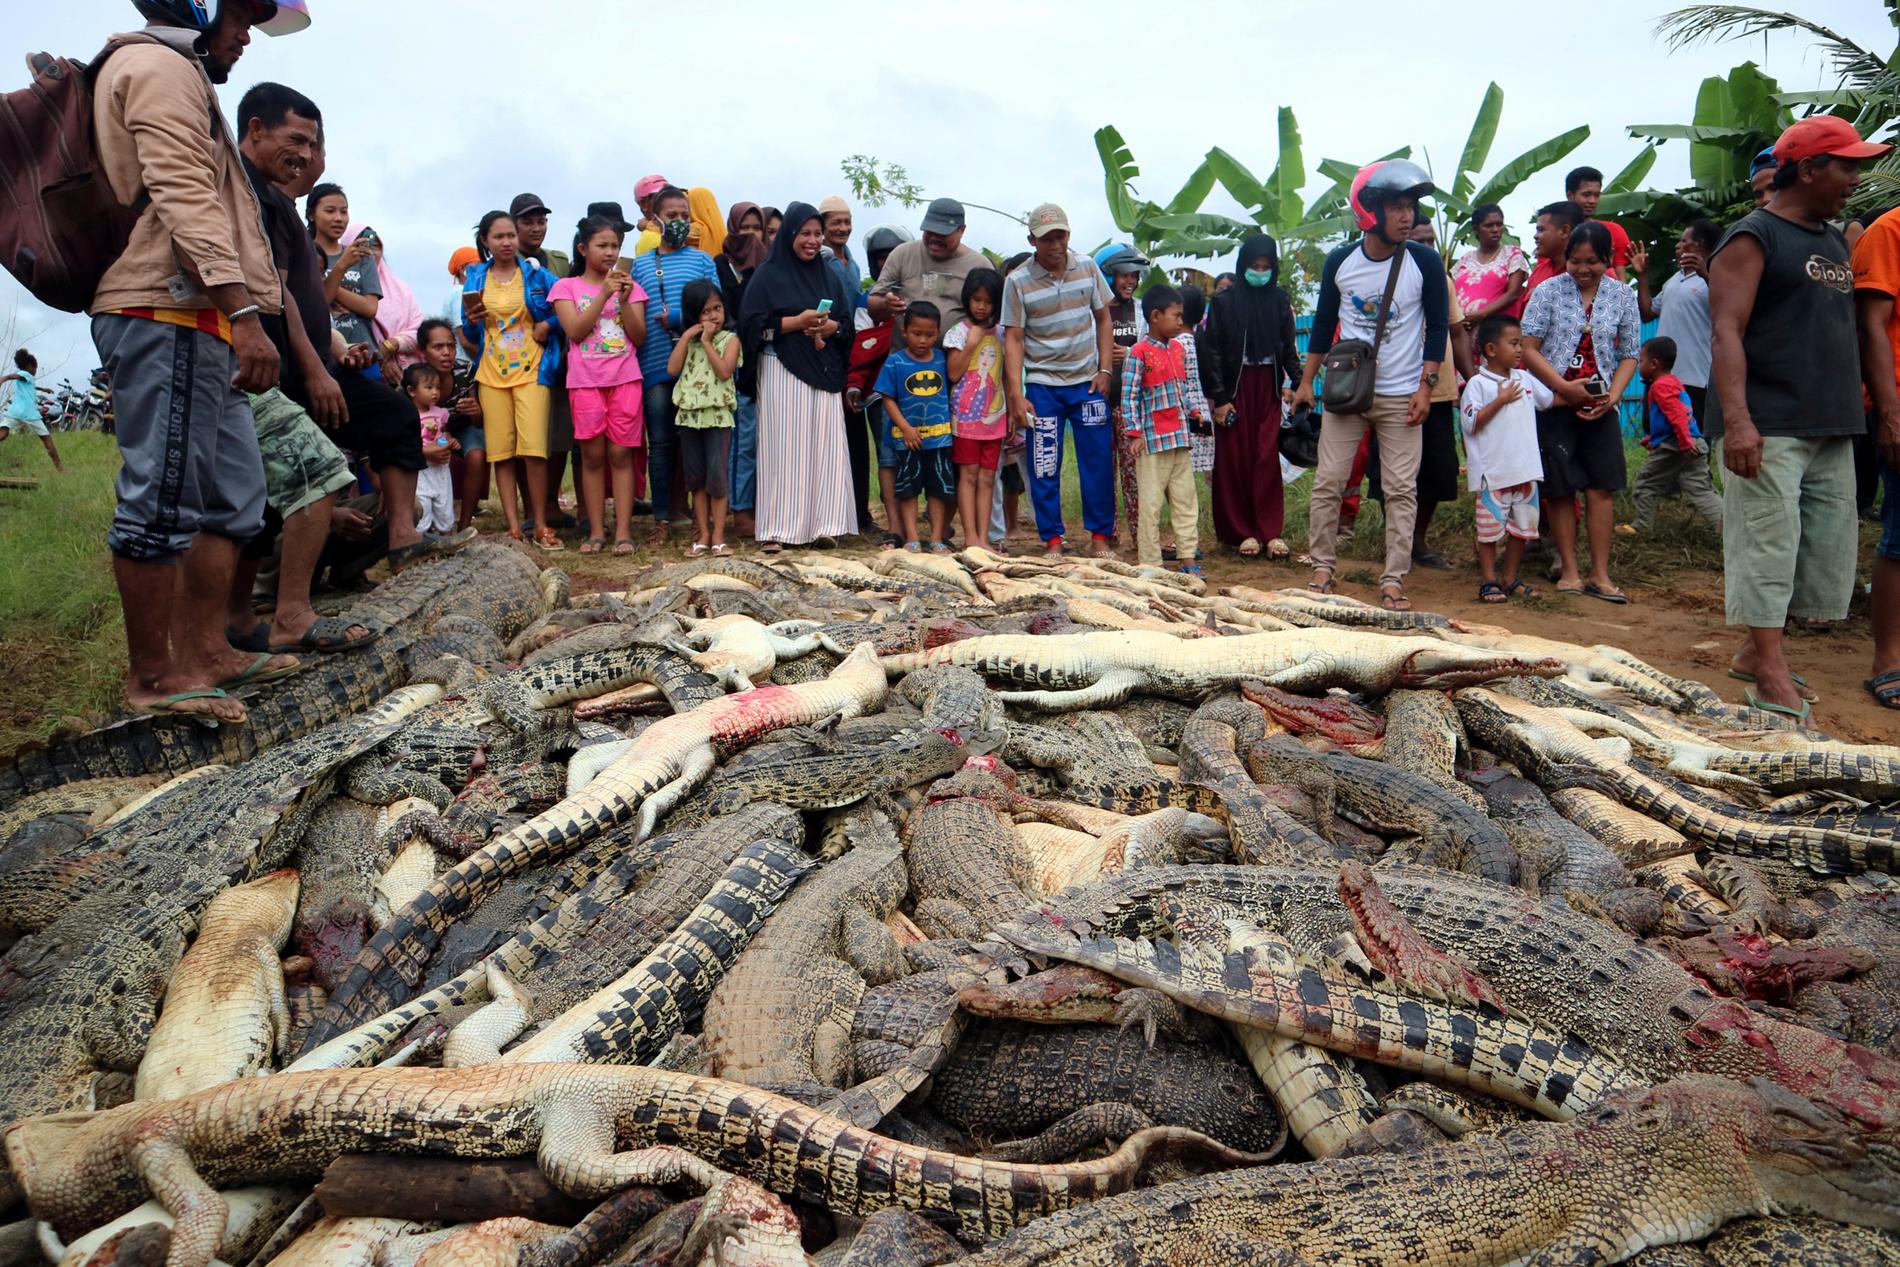 Efteråt tog folkmassan bilder av de dödade krokodilerna.